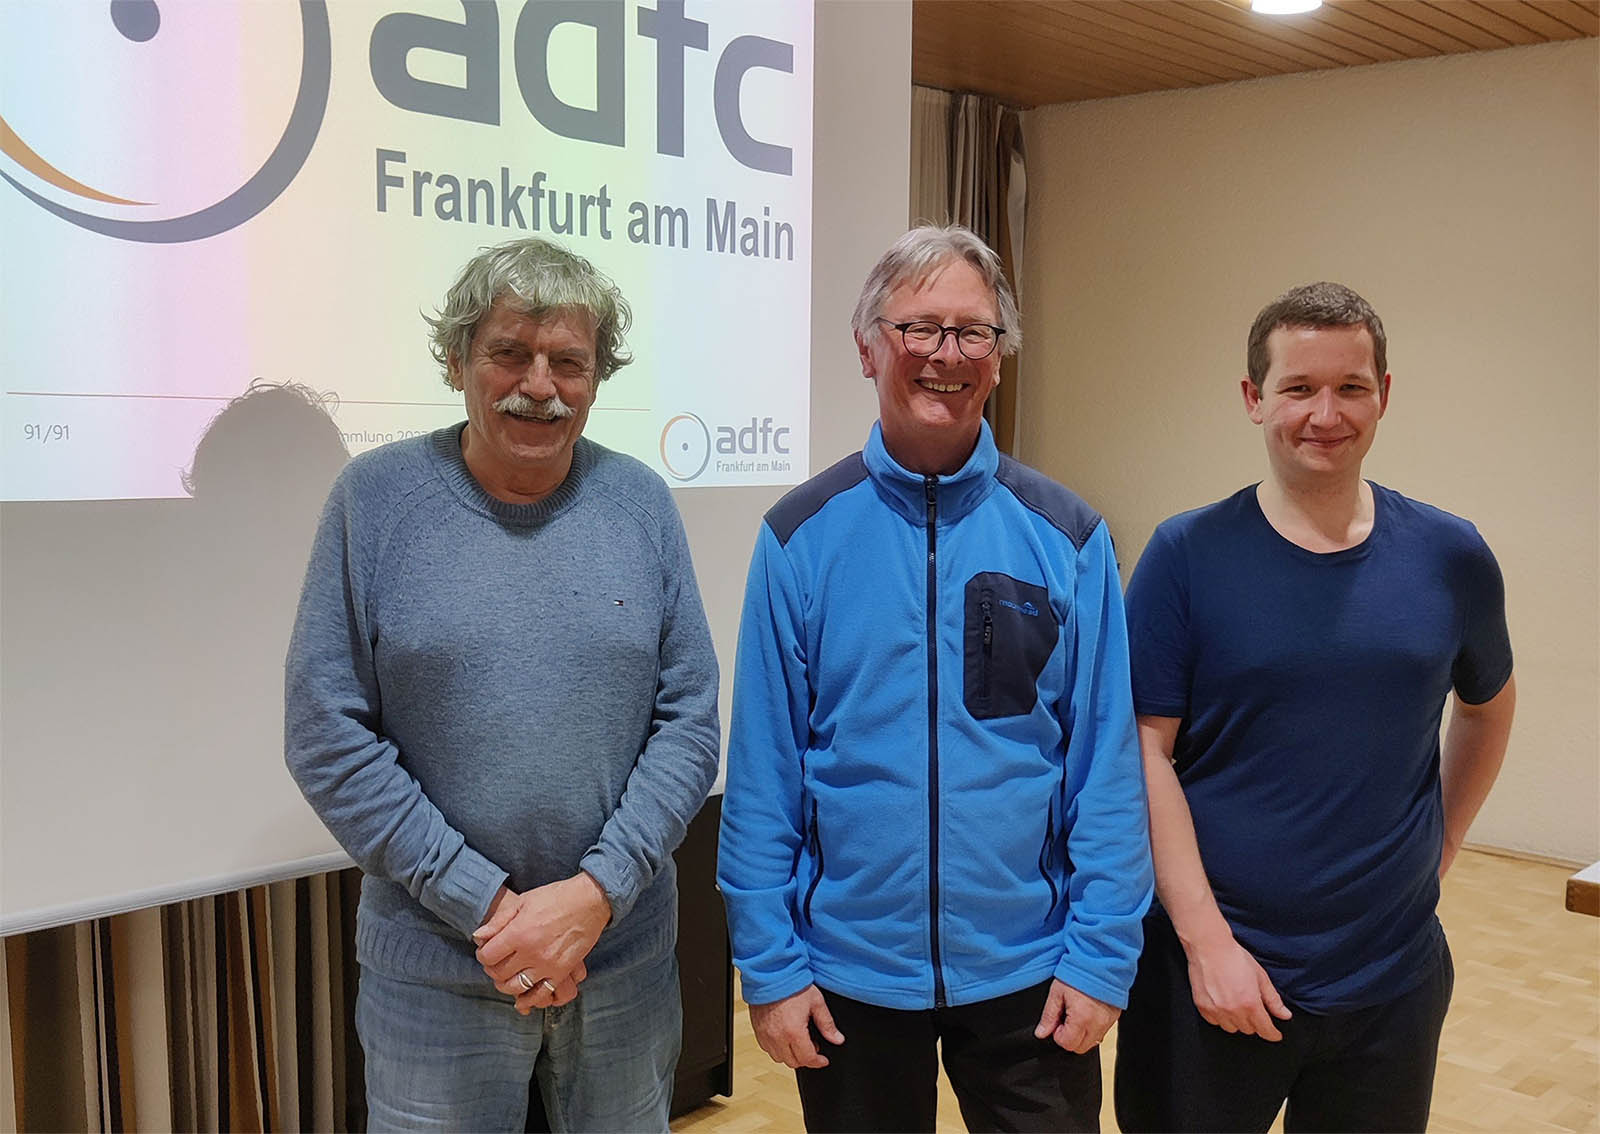 Drei auf einmal: ADFC-Verkehrspolitik in Person, v.l.: Fritz Biel, Bertram Giebeler, Ansgar Hegerfeld
Bild: Michael Genthner